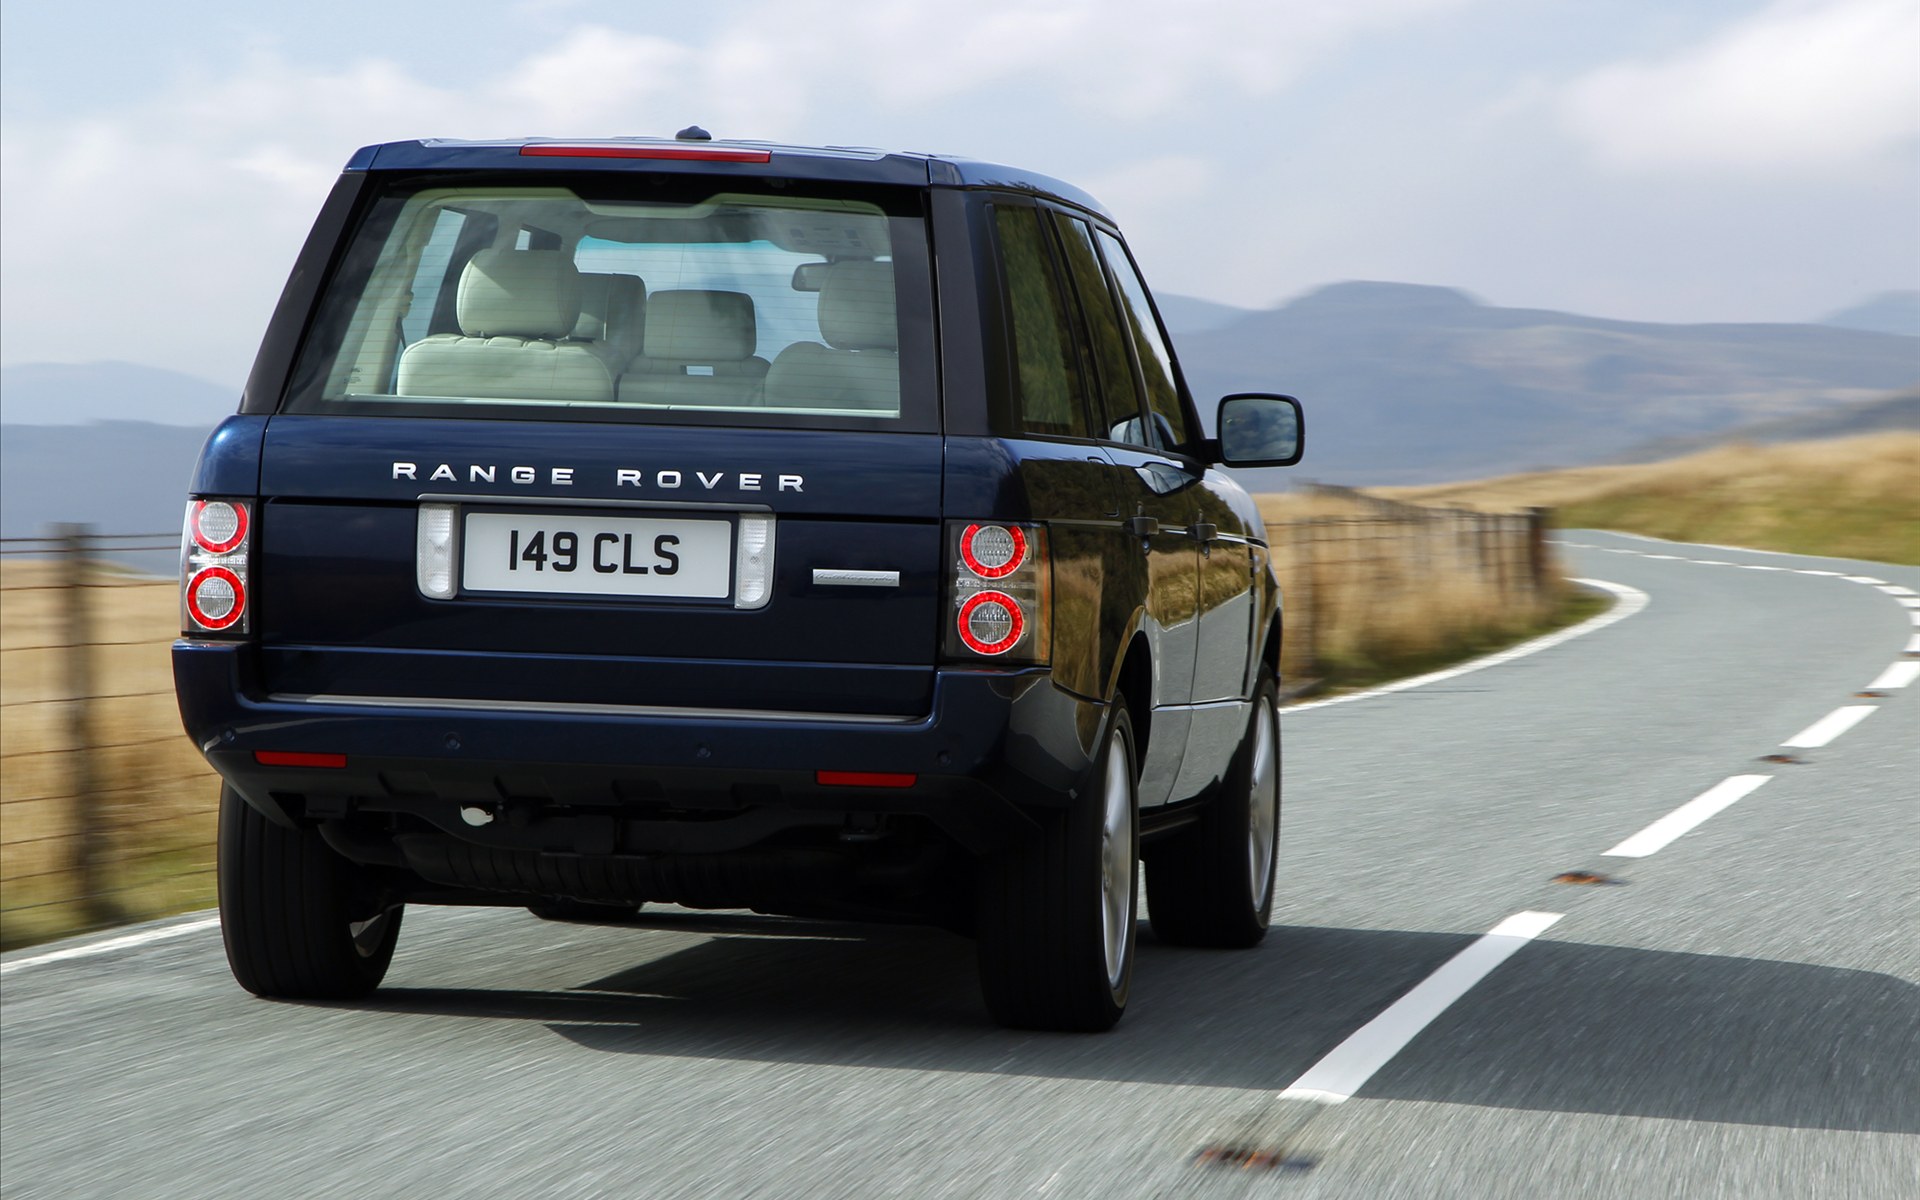 Land Rover(·½) Range Rover(ֽ4)